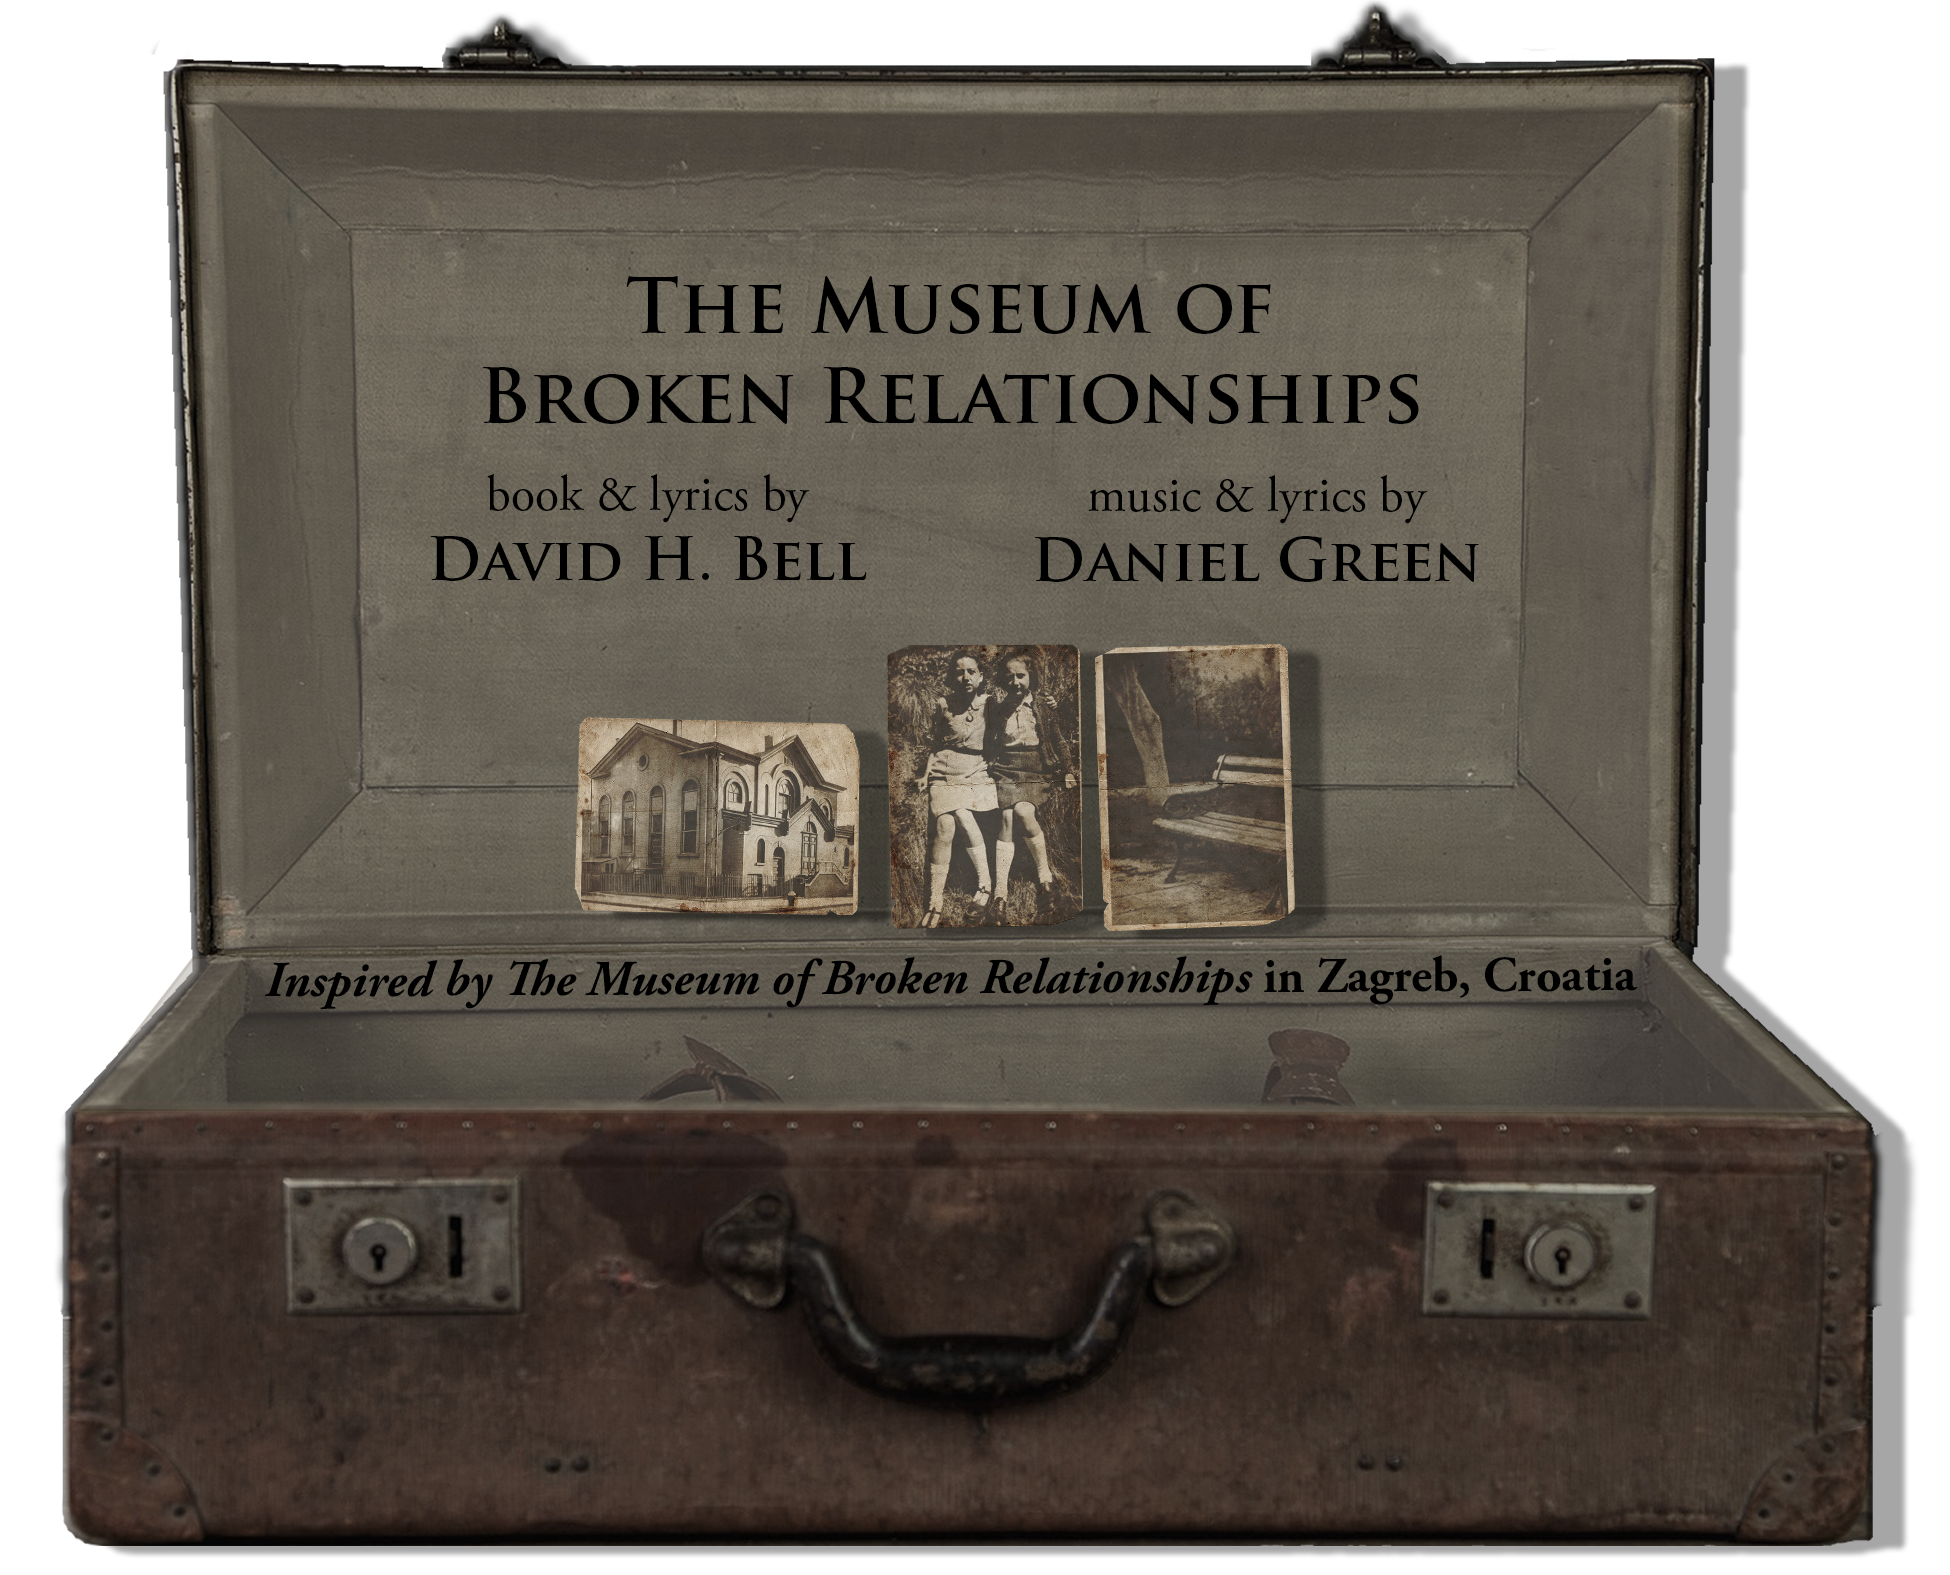 The Museum of Broken Relationships